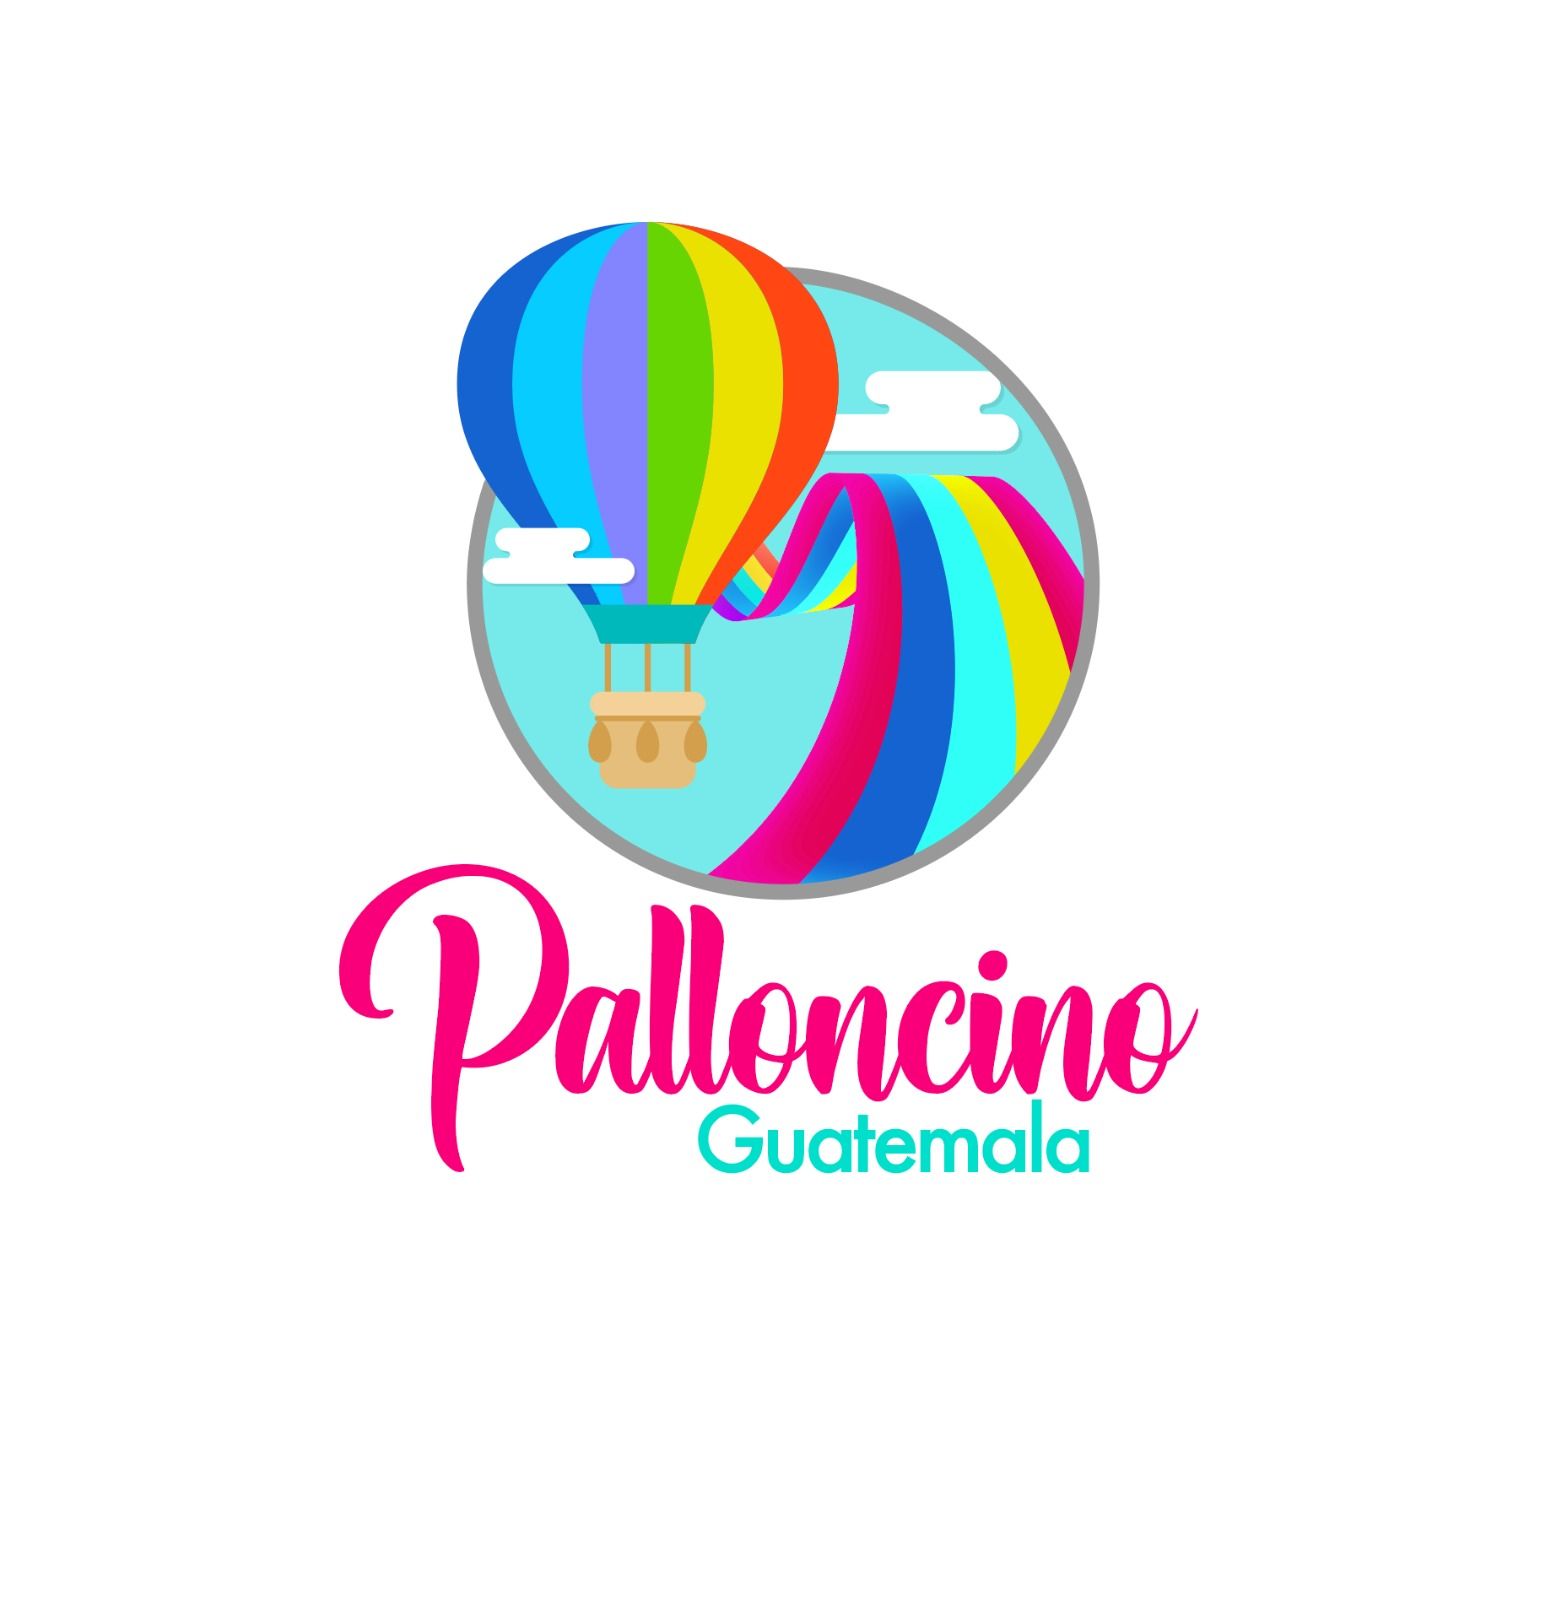 Palloncino Guatemala